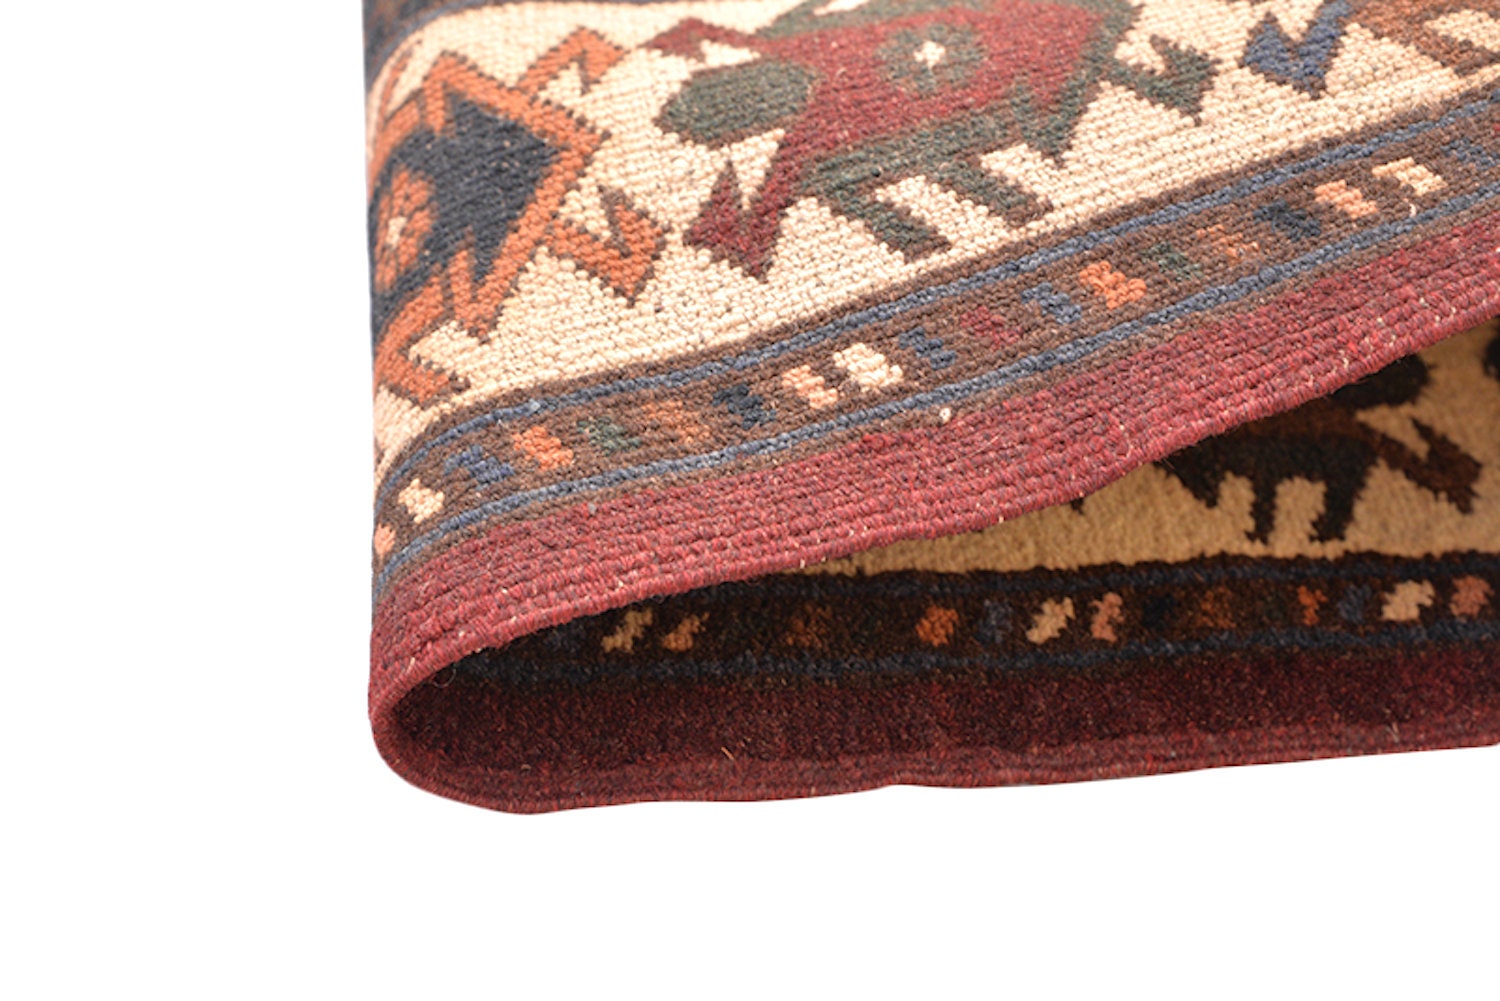 Vintage Area Rug | Red Brown Rug | 4 x 6 Ft | Geometric Tribal | Rustic Dark Toned Rug | Wool Antique Rug